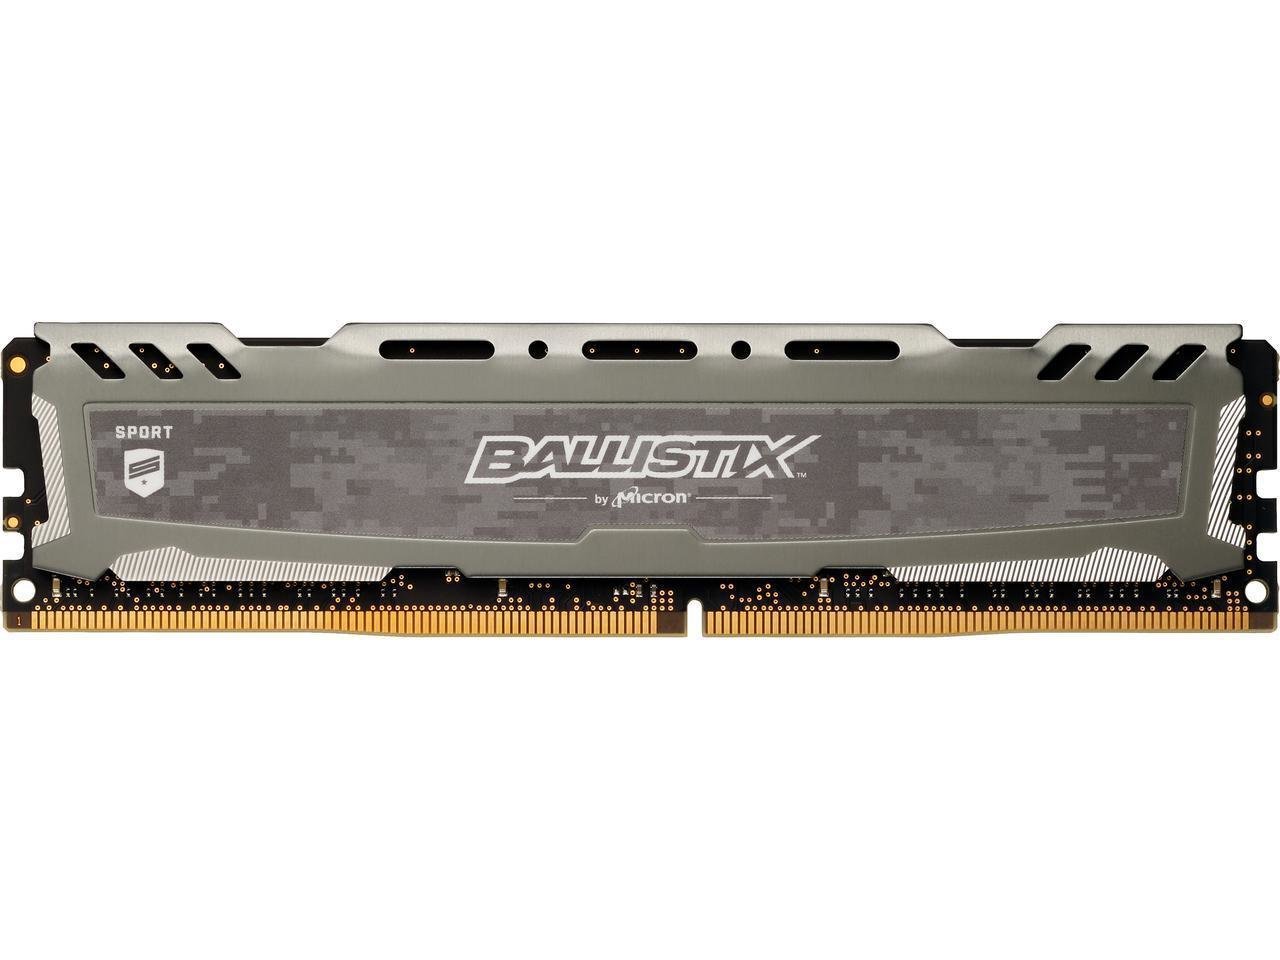 Ballistix Sport LT 16GB Single DDR4 2666 MT/s (PC4-21300) DR x8 DIMM 288-Pin Memory - BLS16G4D26BFSB (Grey)